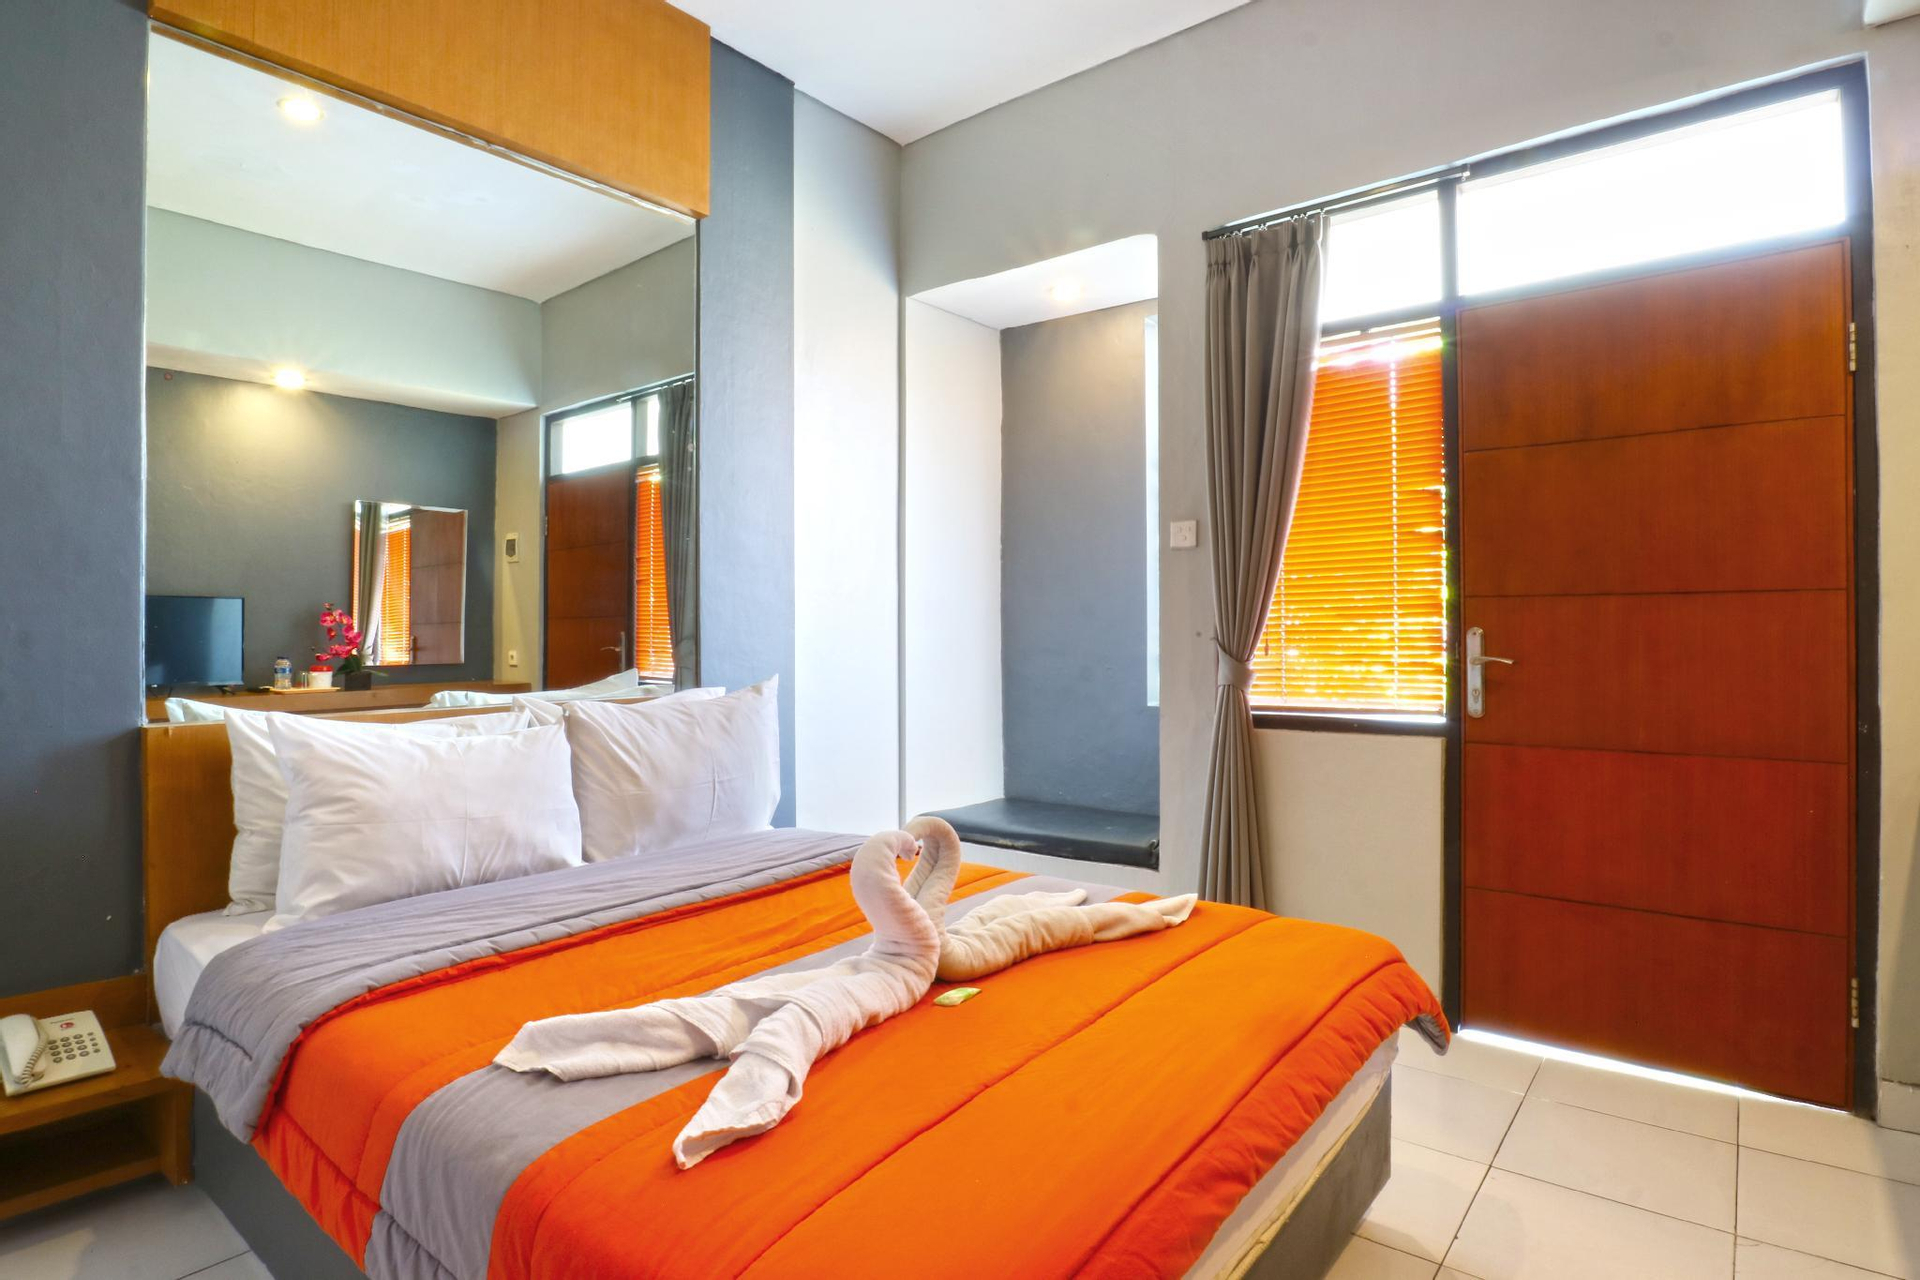 Bedroom, Sayang Residence II, Denpasar